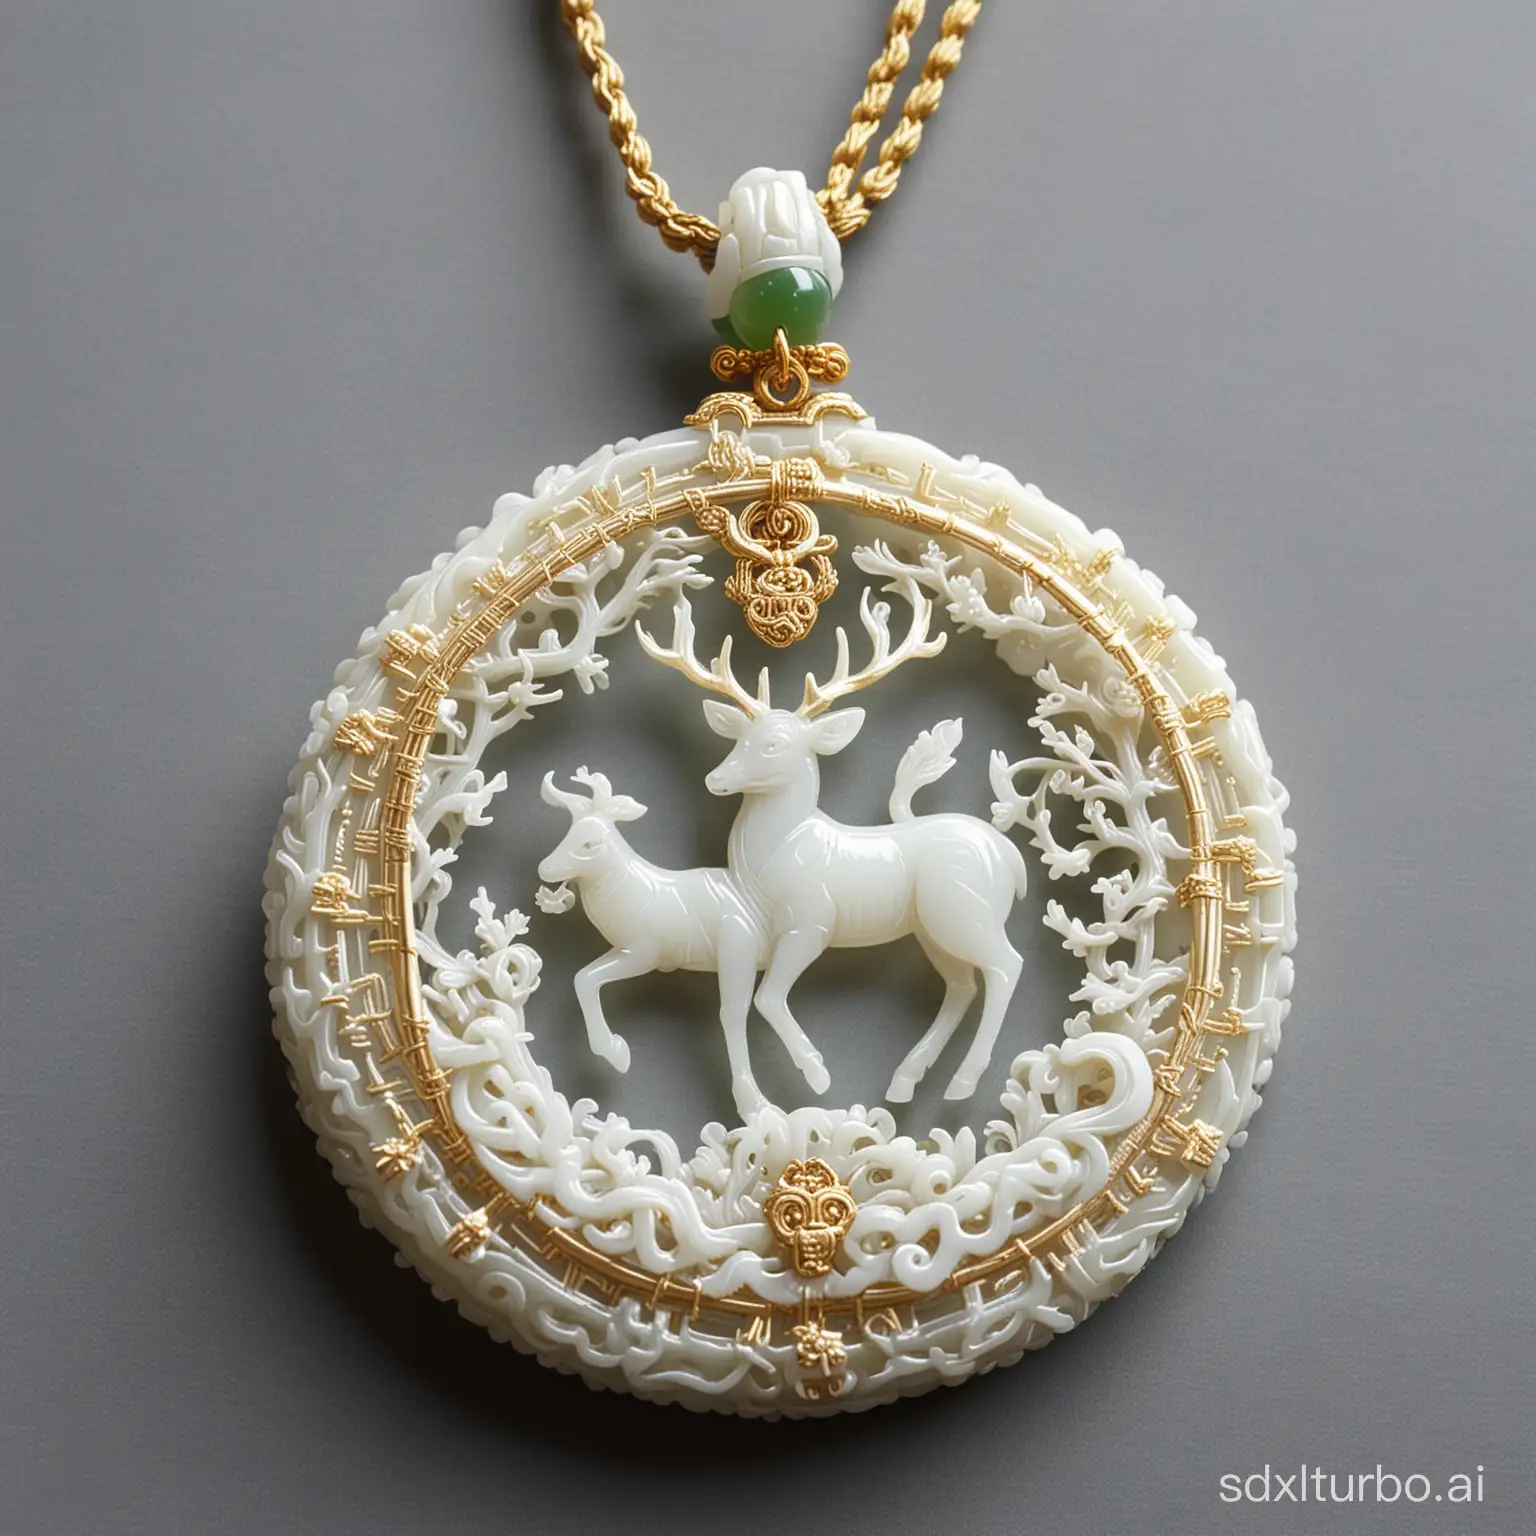 Exquisite-Deer-Kings-Origin-White-Jade-Pendant-with-Golden-Tassels